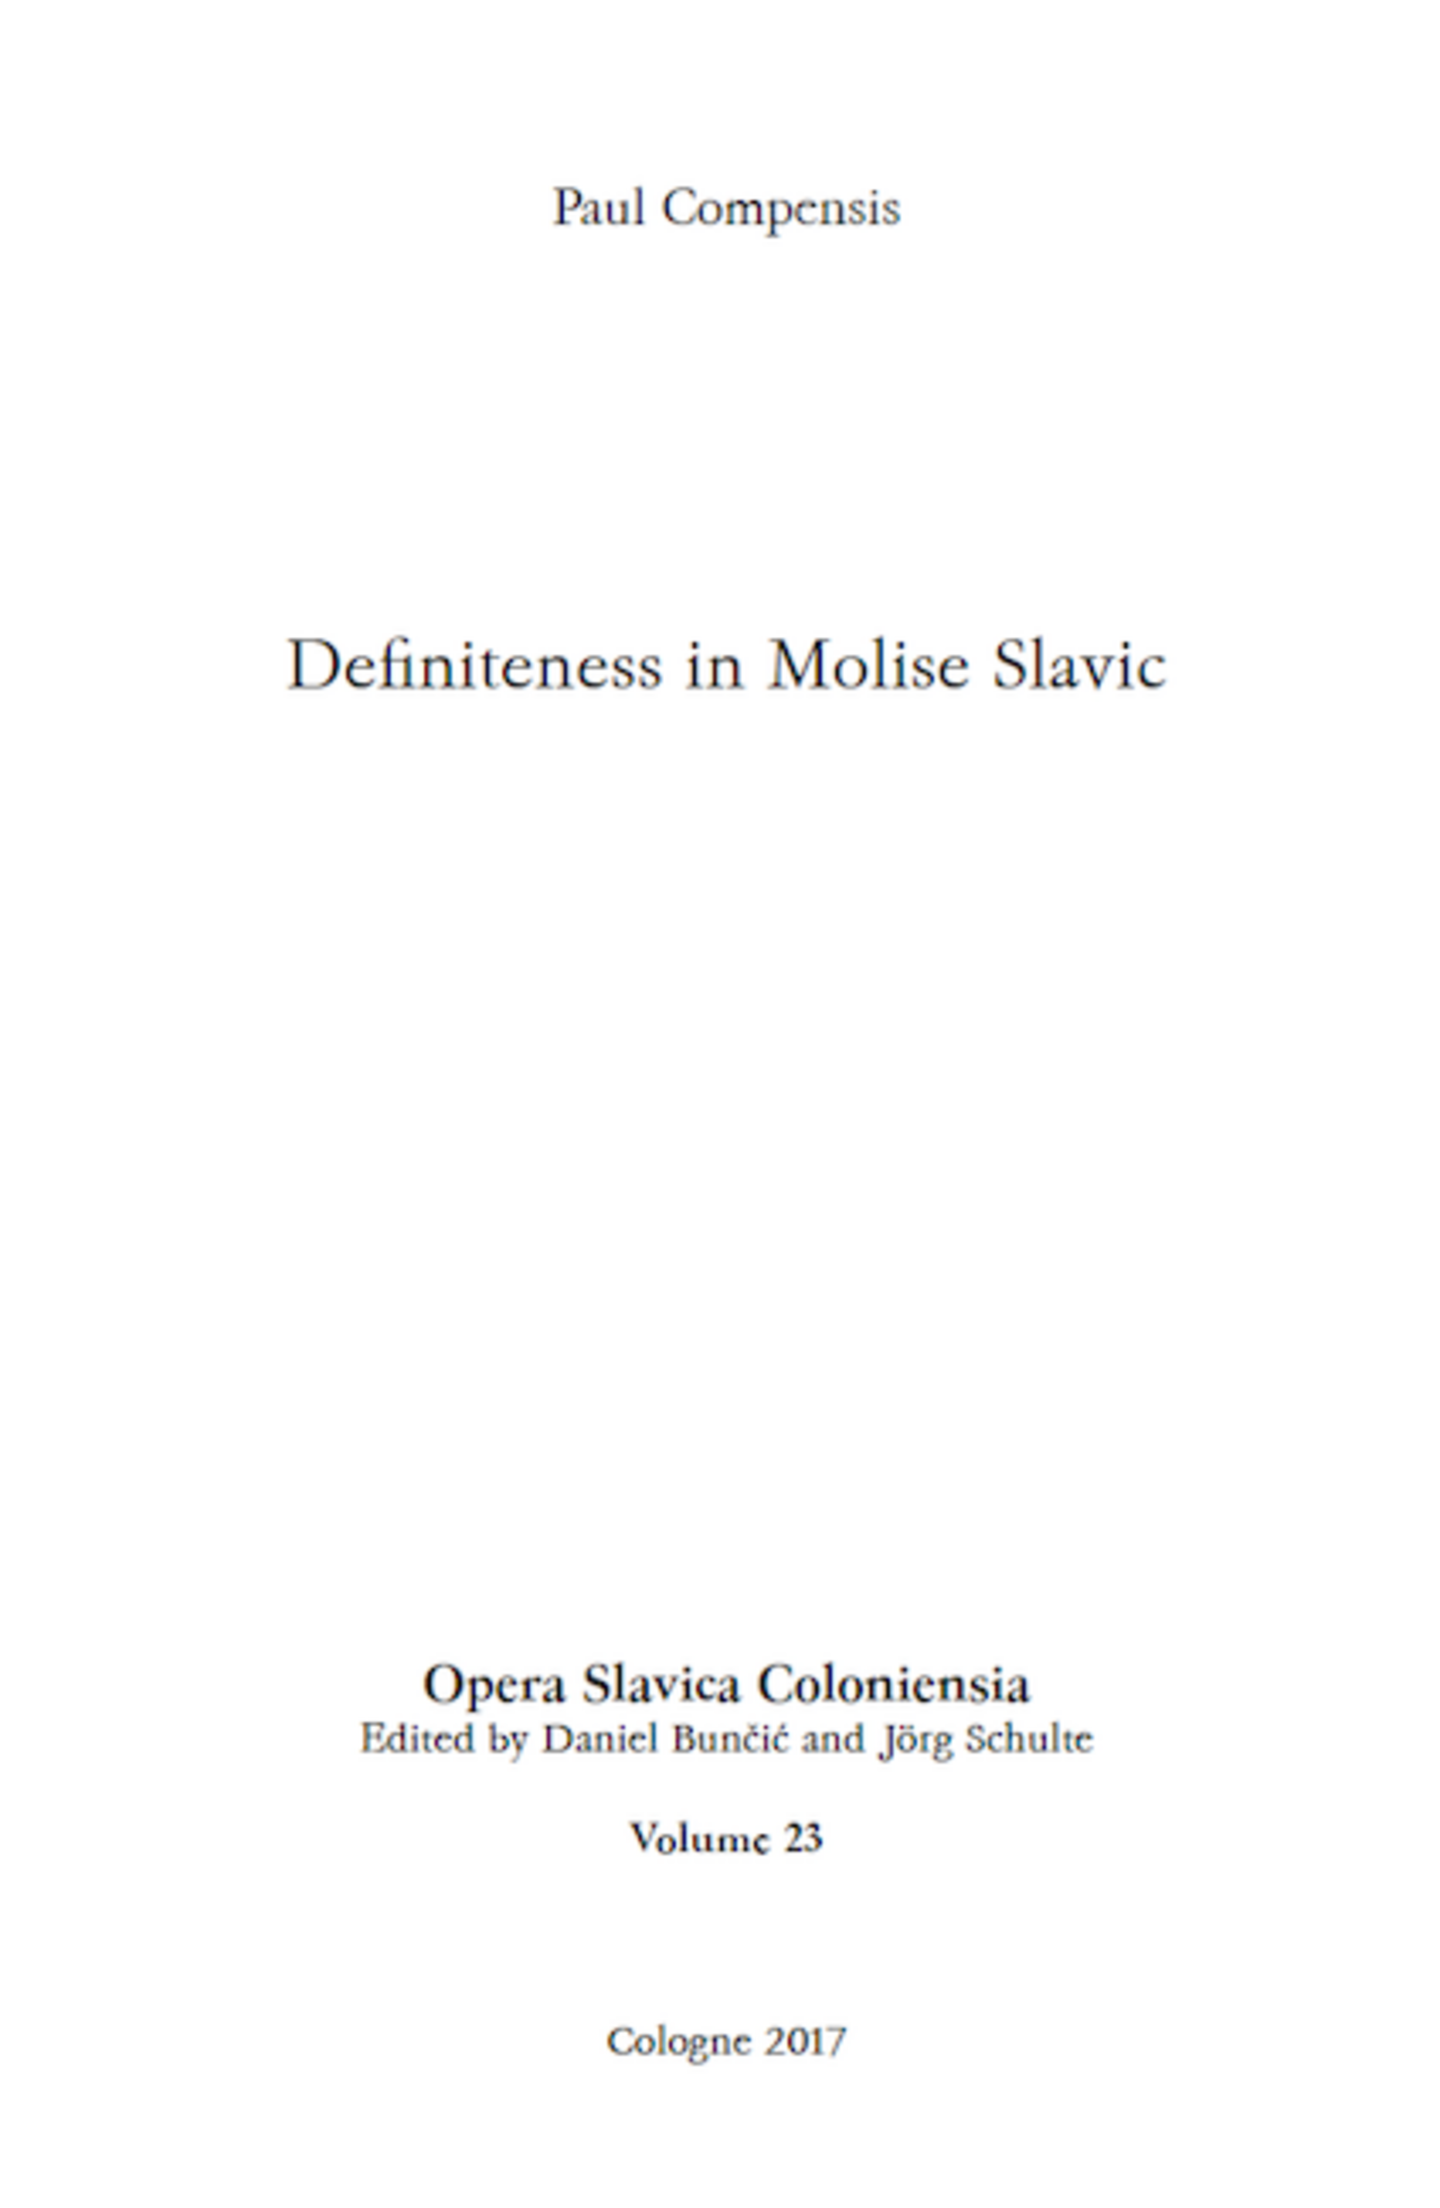 Compensis (2017) Definiteness in Molise Slavic